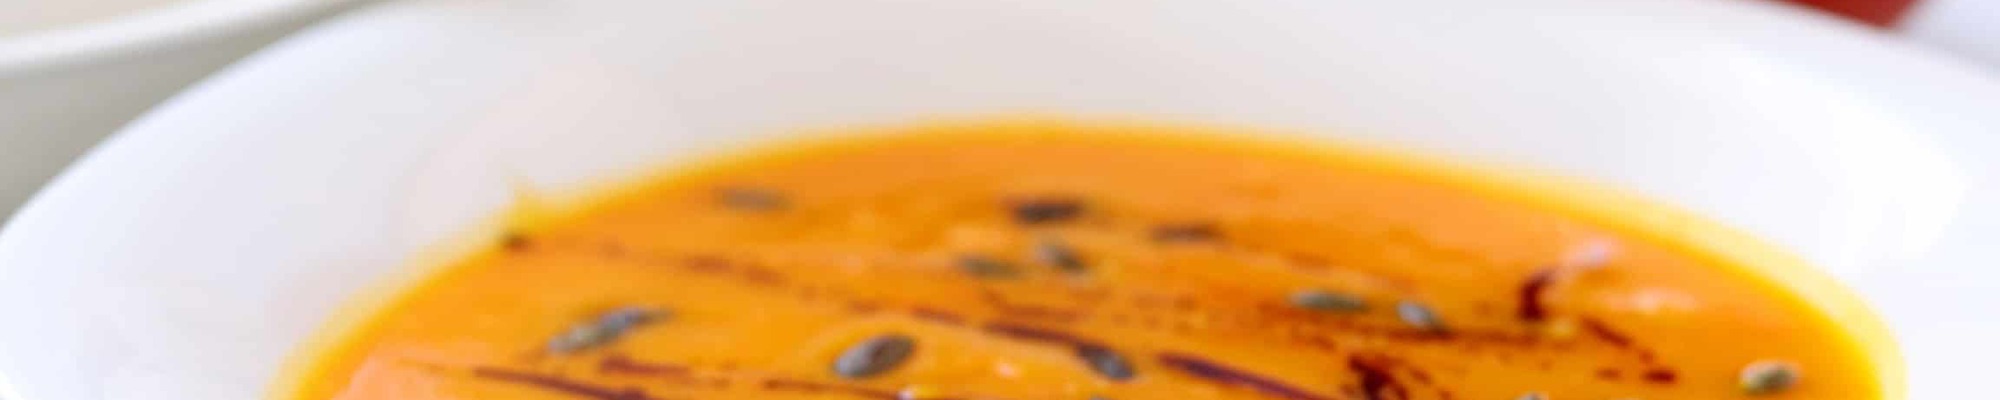 Krémová a výživná tekvicová polievka. Ľahká príprava a úžasná chuť ťa presvedčia o jej dokonalosti (Recept)